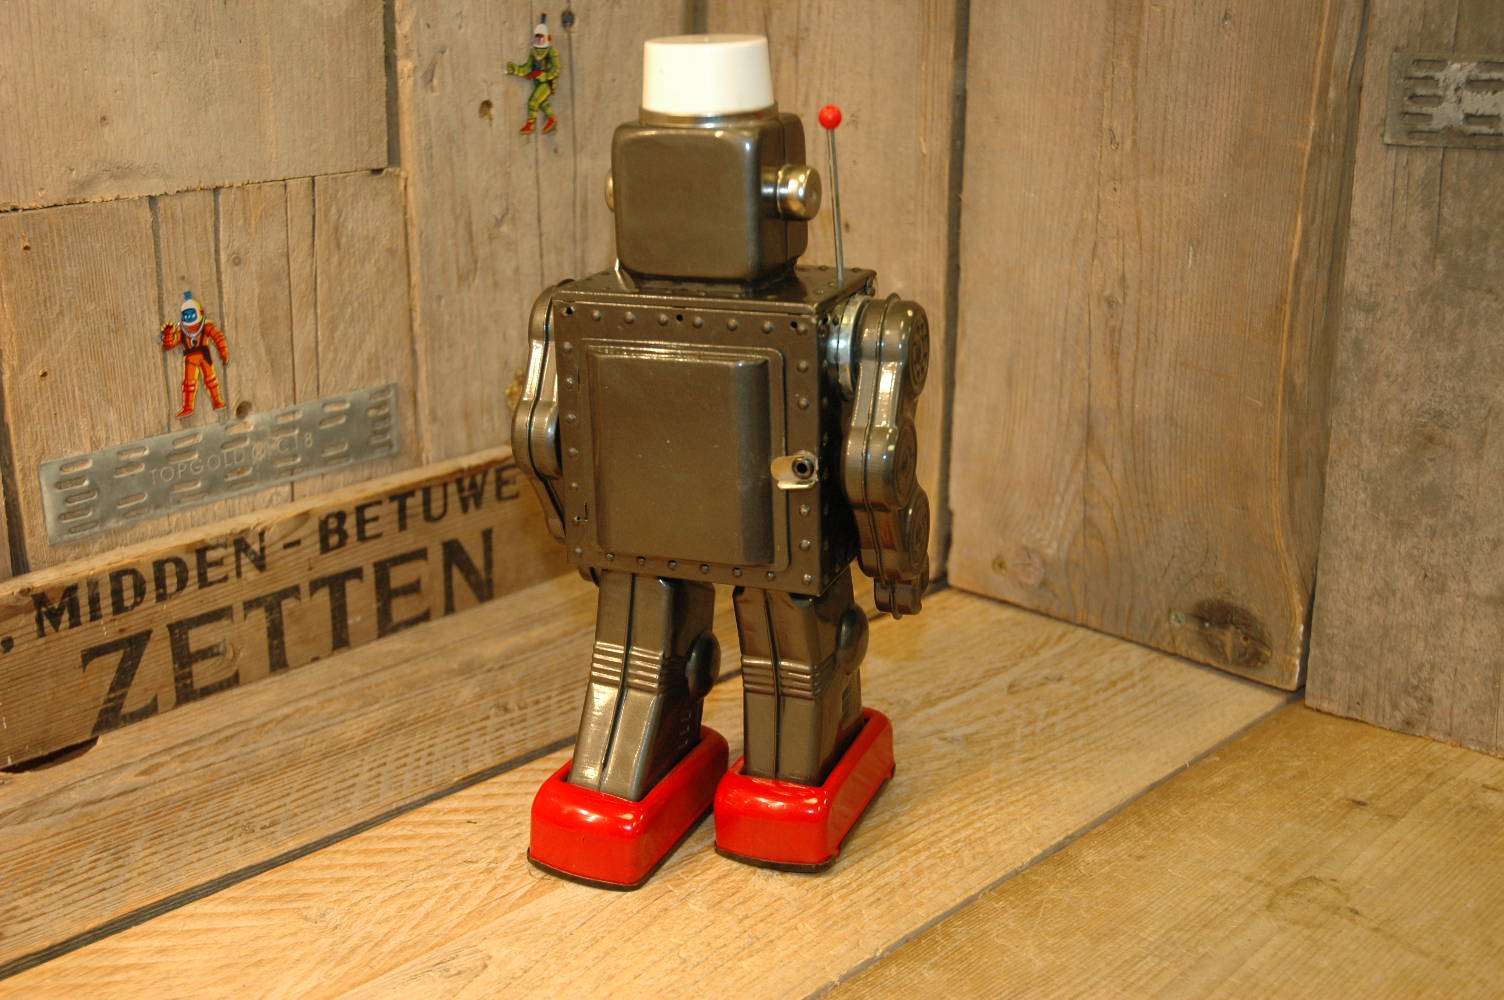 Horikawa - Machine Robot